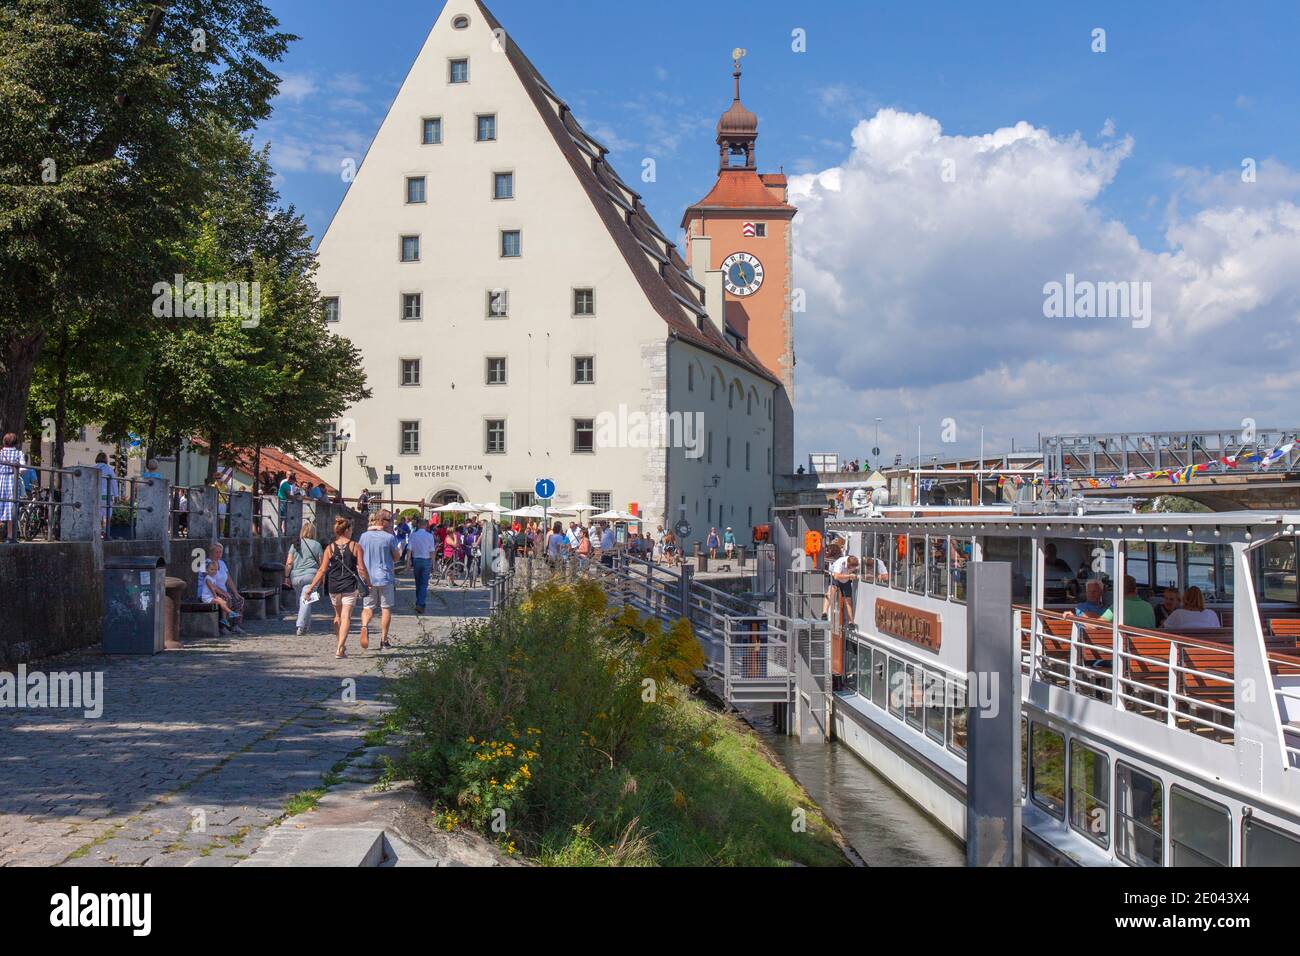 Blick auf den Wharfside. Besucherzentrum Welterbe, Regensburg, Bayern, Deutschland. Das Museum konzentriert sich auf die Geschichte der Steinbrücke der Stadt. Stockfoto